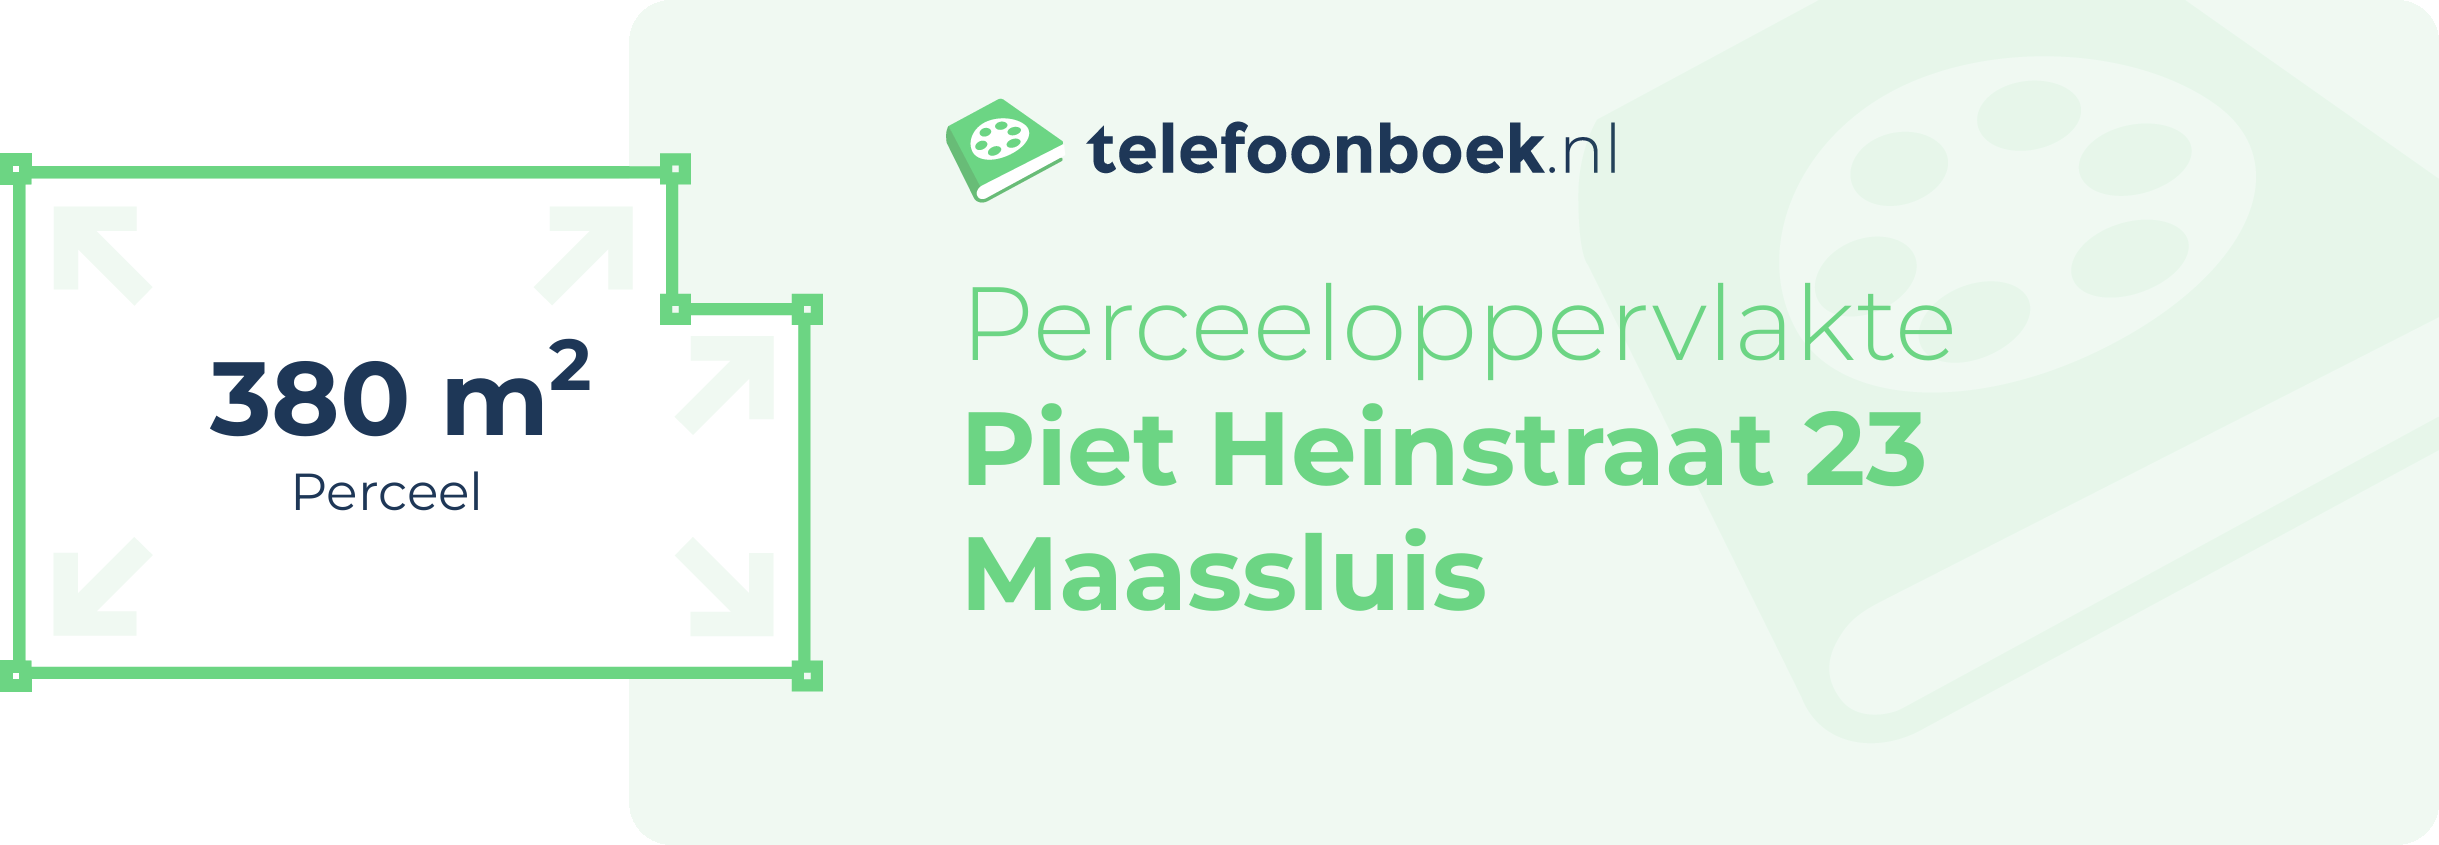 Perceeloppervlakte Piet Heinstraat 23 Maassluis